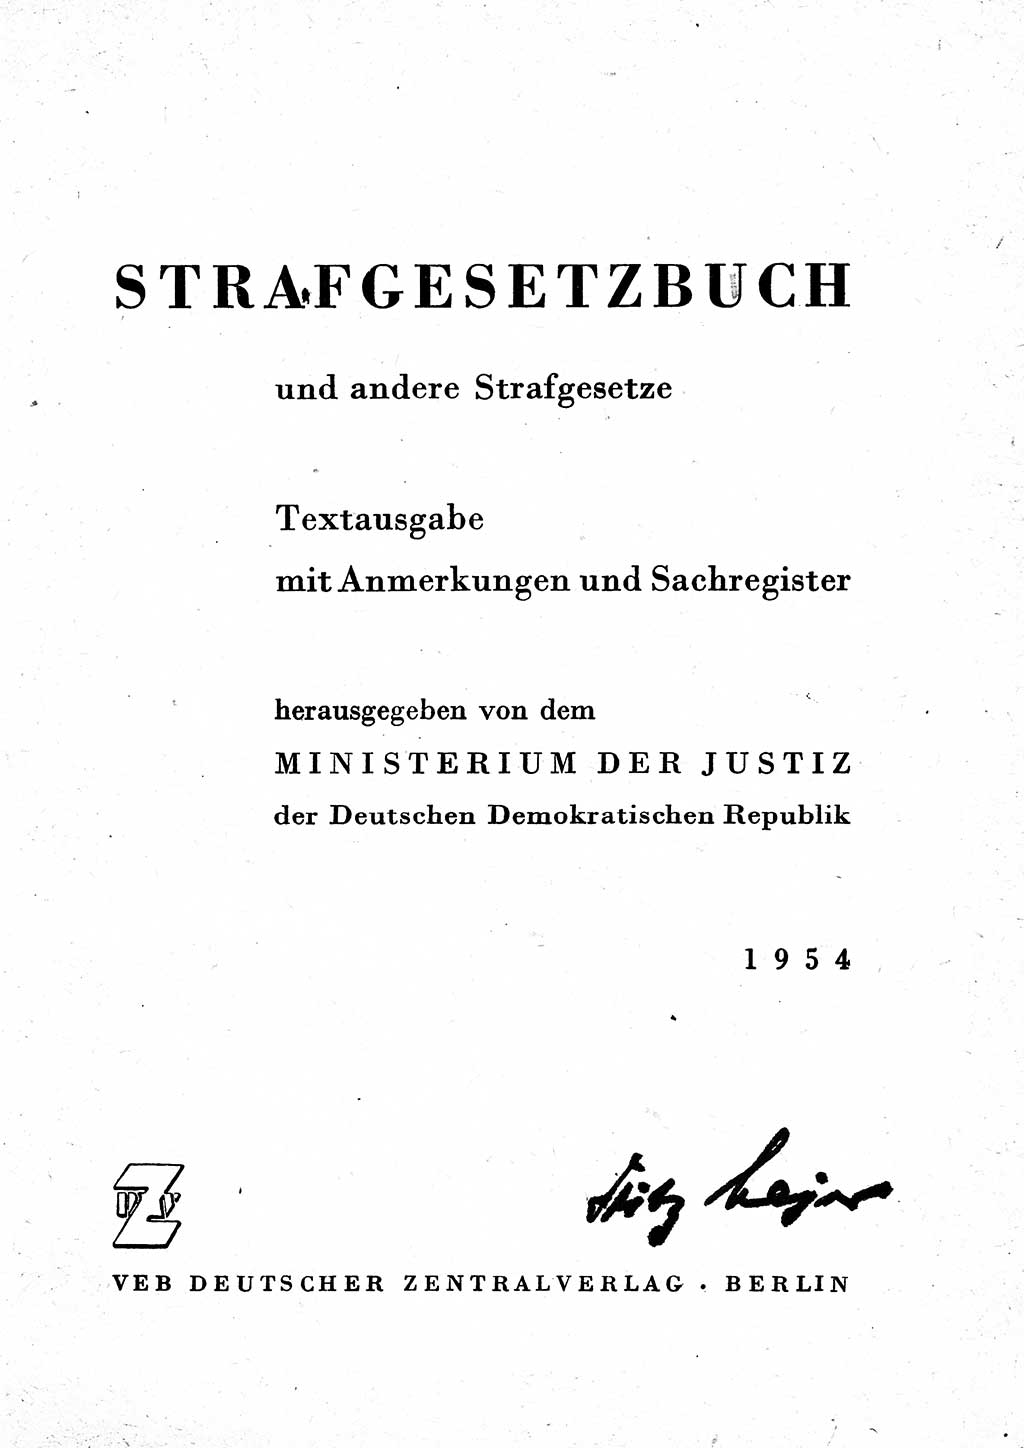 Einleitung Strafgesetzbuch (StGB) und andere Strafgesetze [Deutsche Demokratische Republik (DDR)] 1954, Seite 3 (Einl. StGB Strafges. DDR 1954, S. 3)